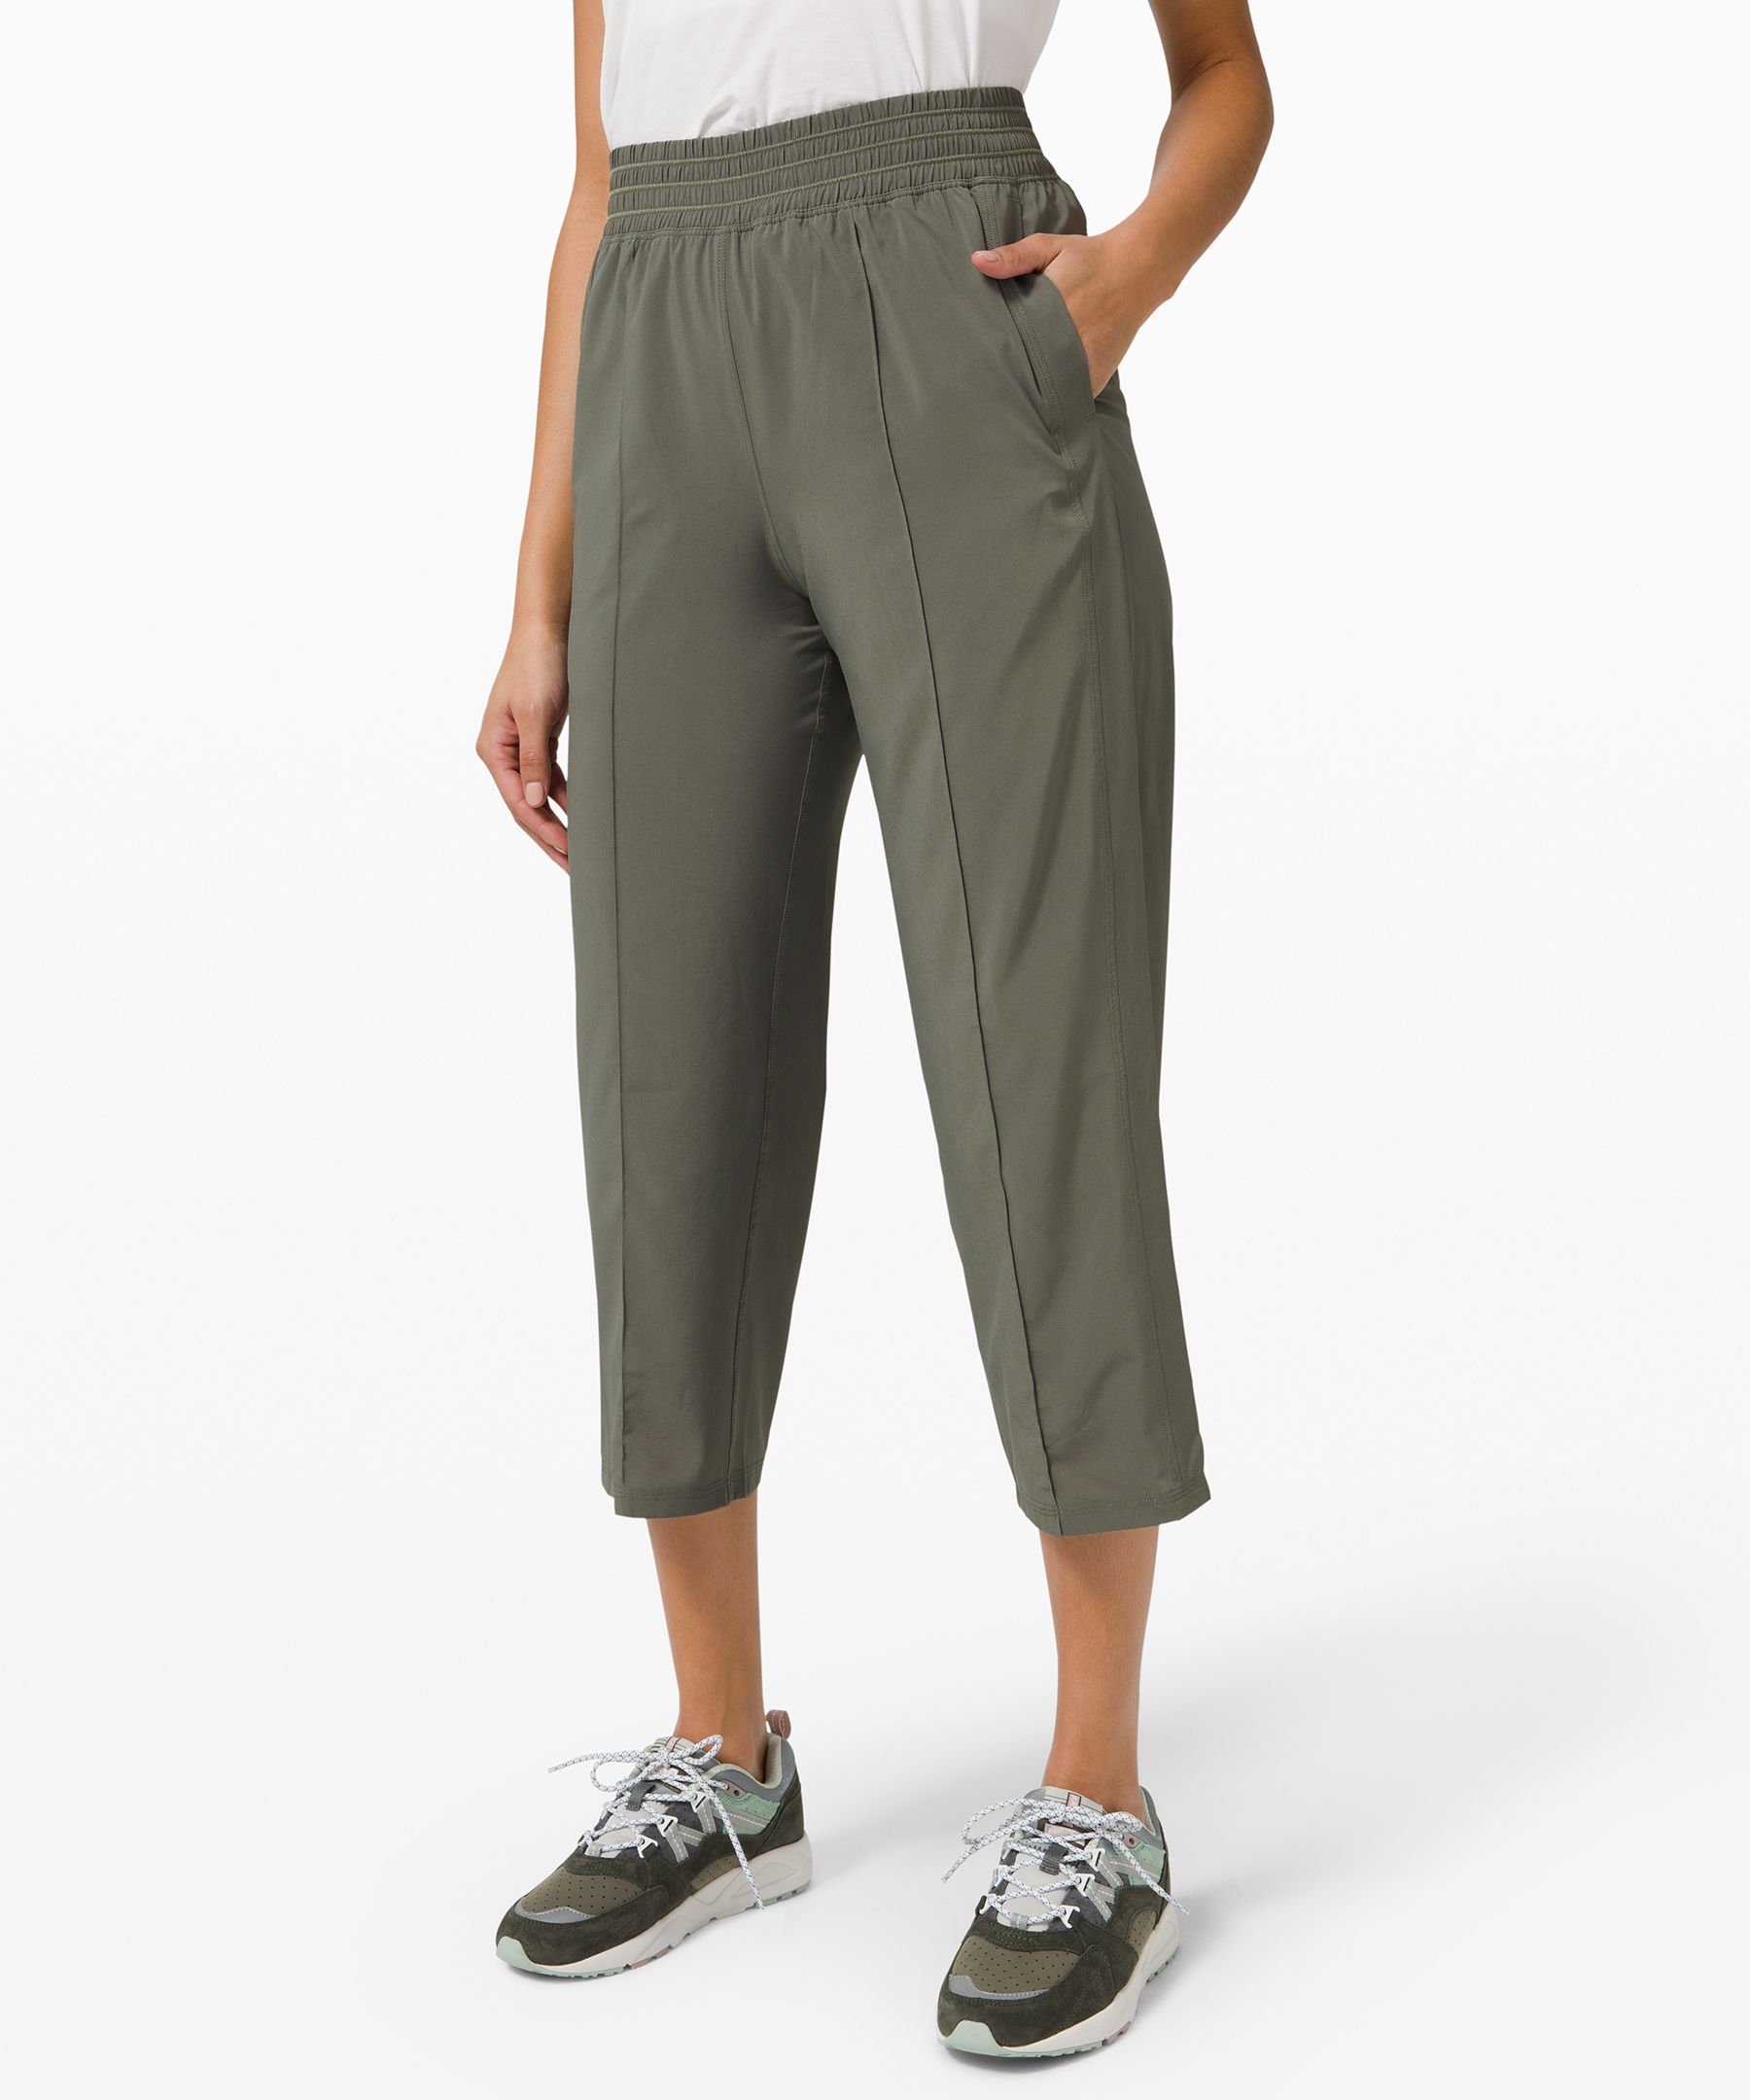 lululemon athletica, Pants & Jumpsuits, Lululemon Wanderer Culottes Pants  Size 8